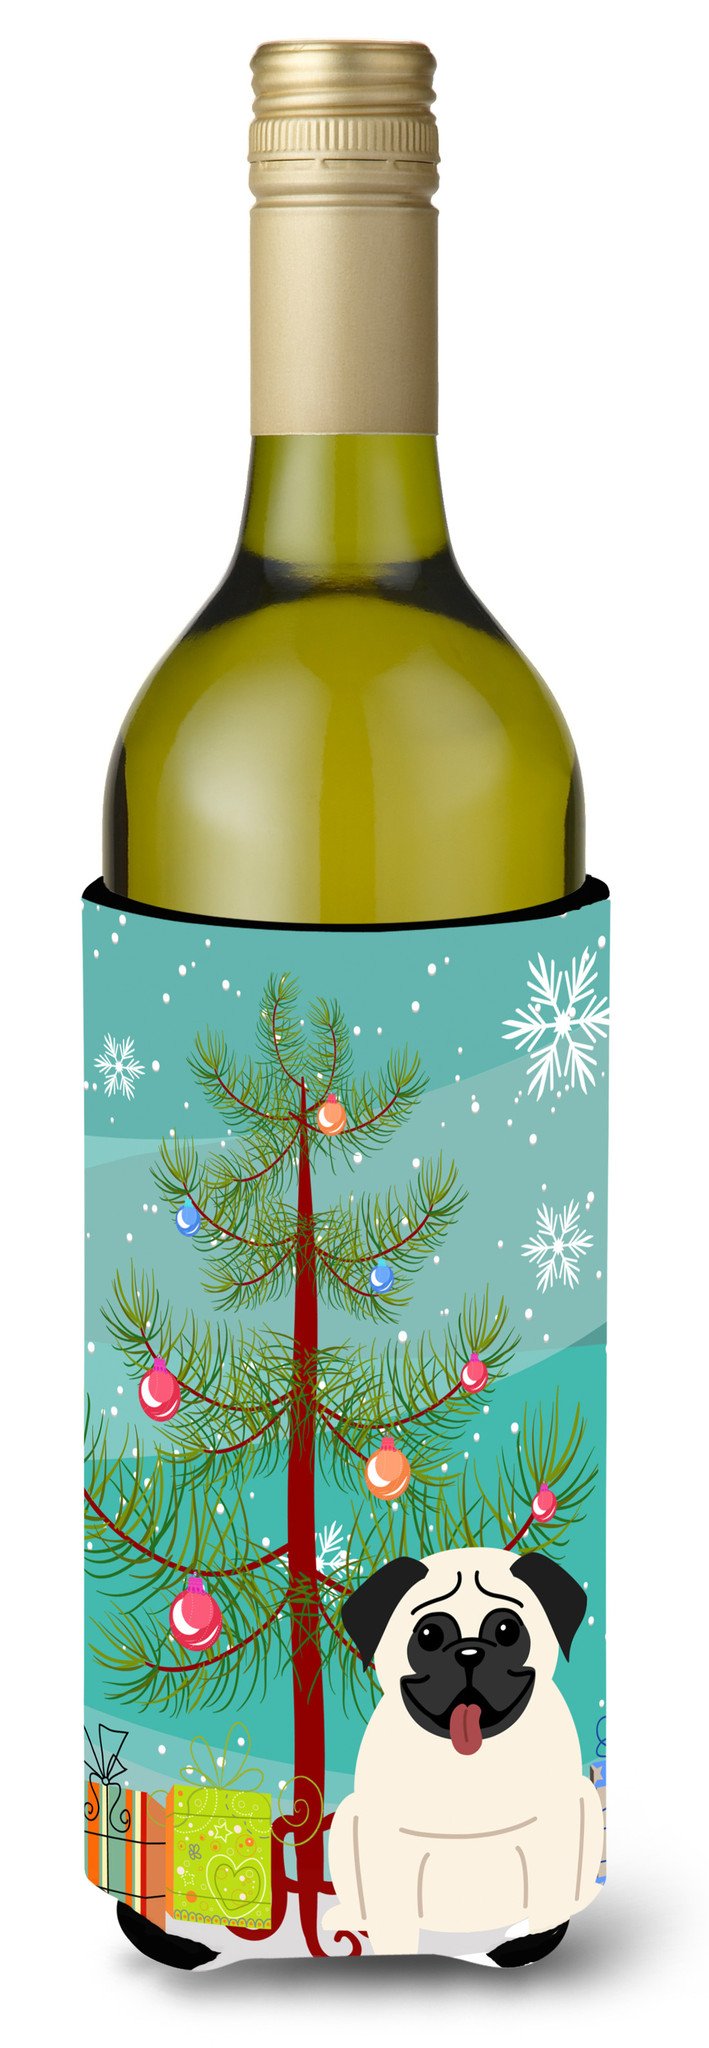 Merry Christmas Tree Pug Cream Wine Bottle Beverge Insulator Hugger BB4129LITERK by Caroline's Treasures